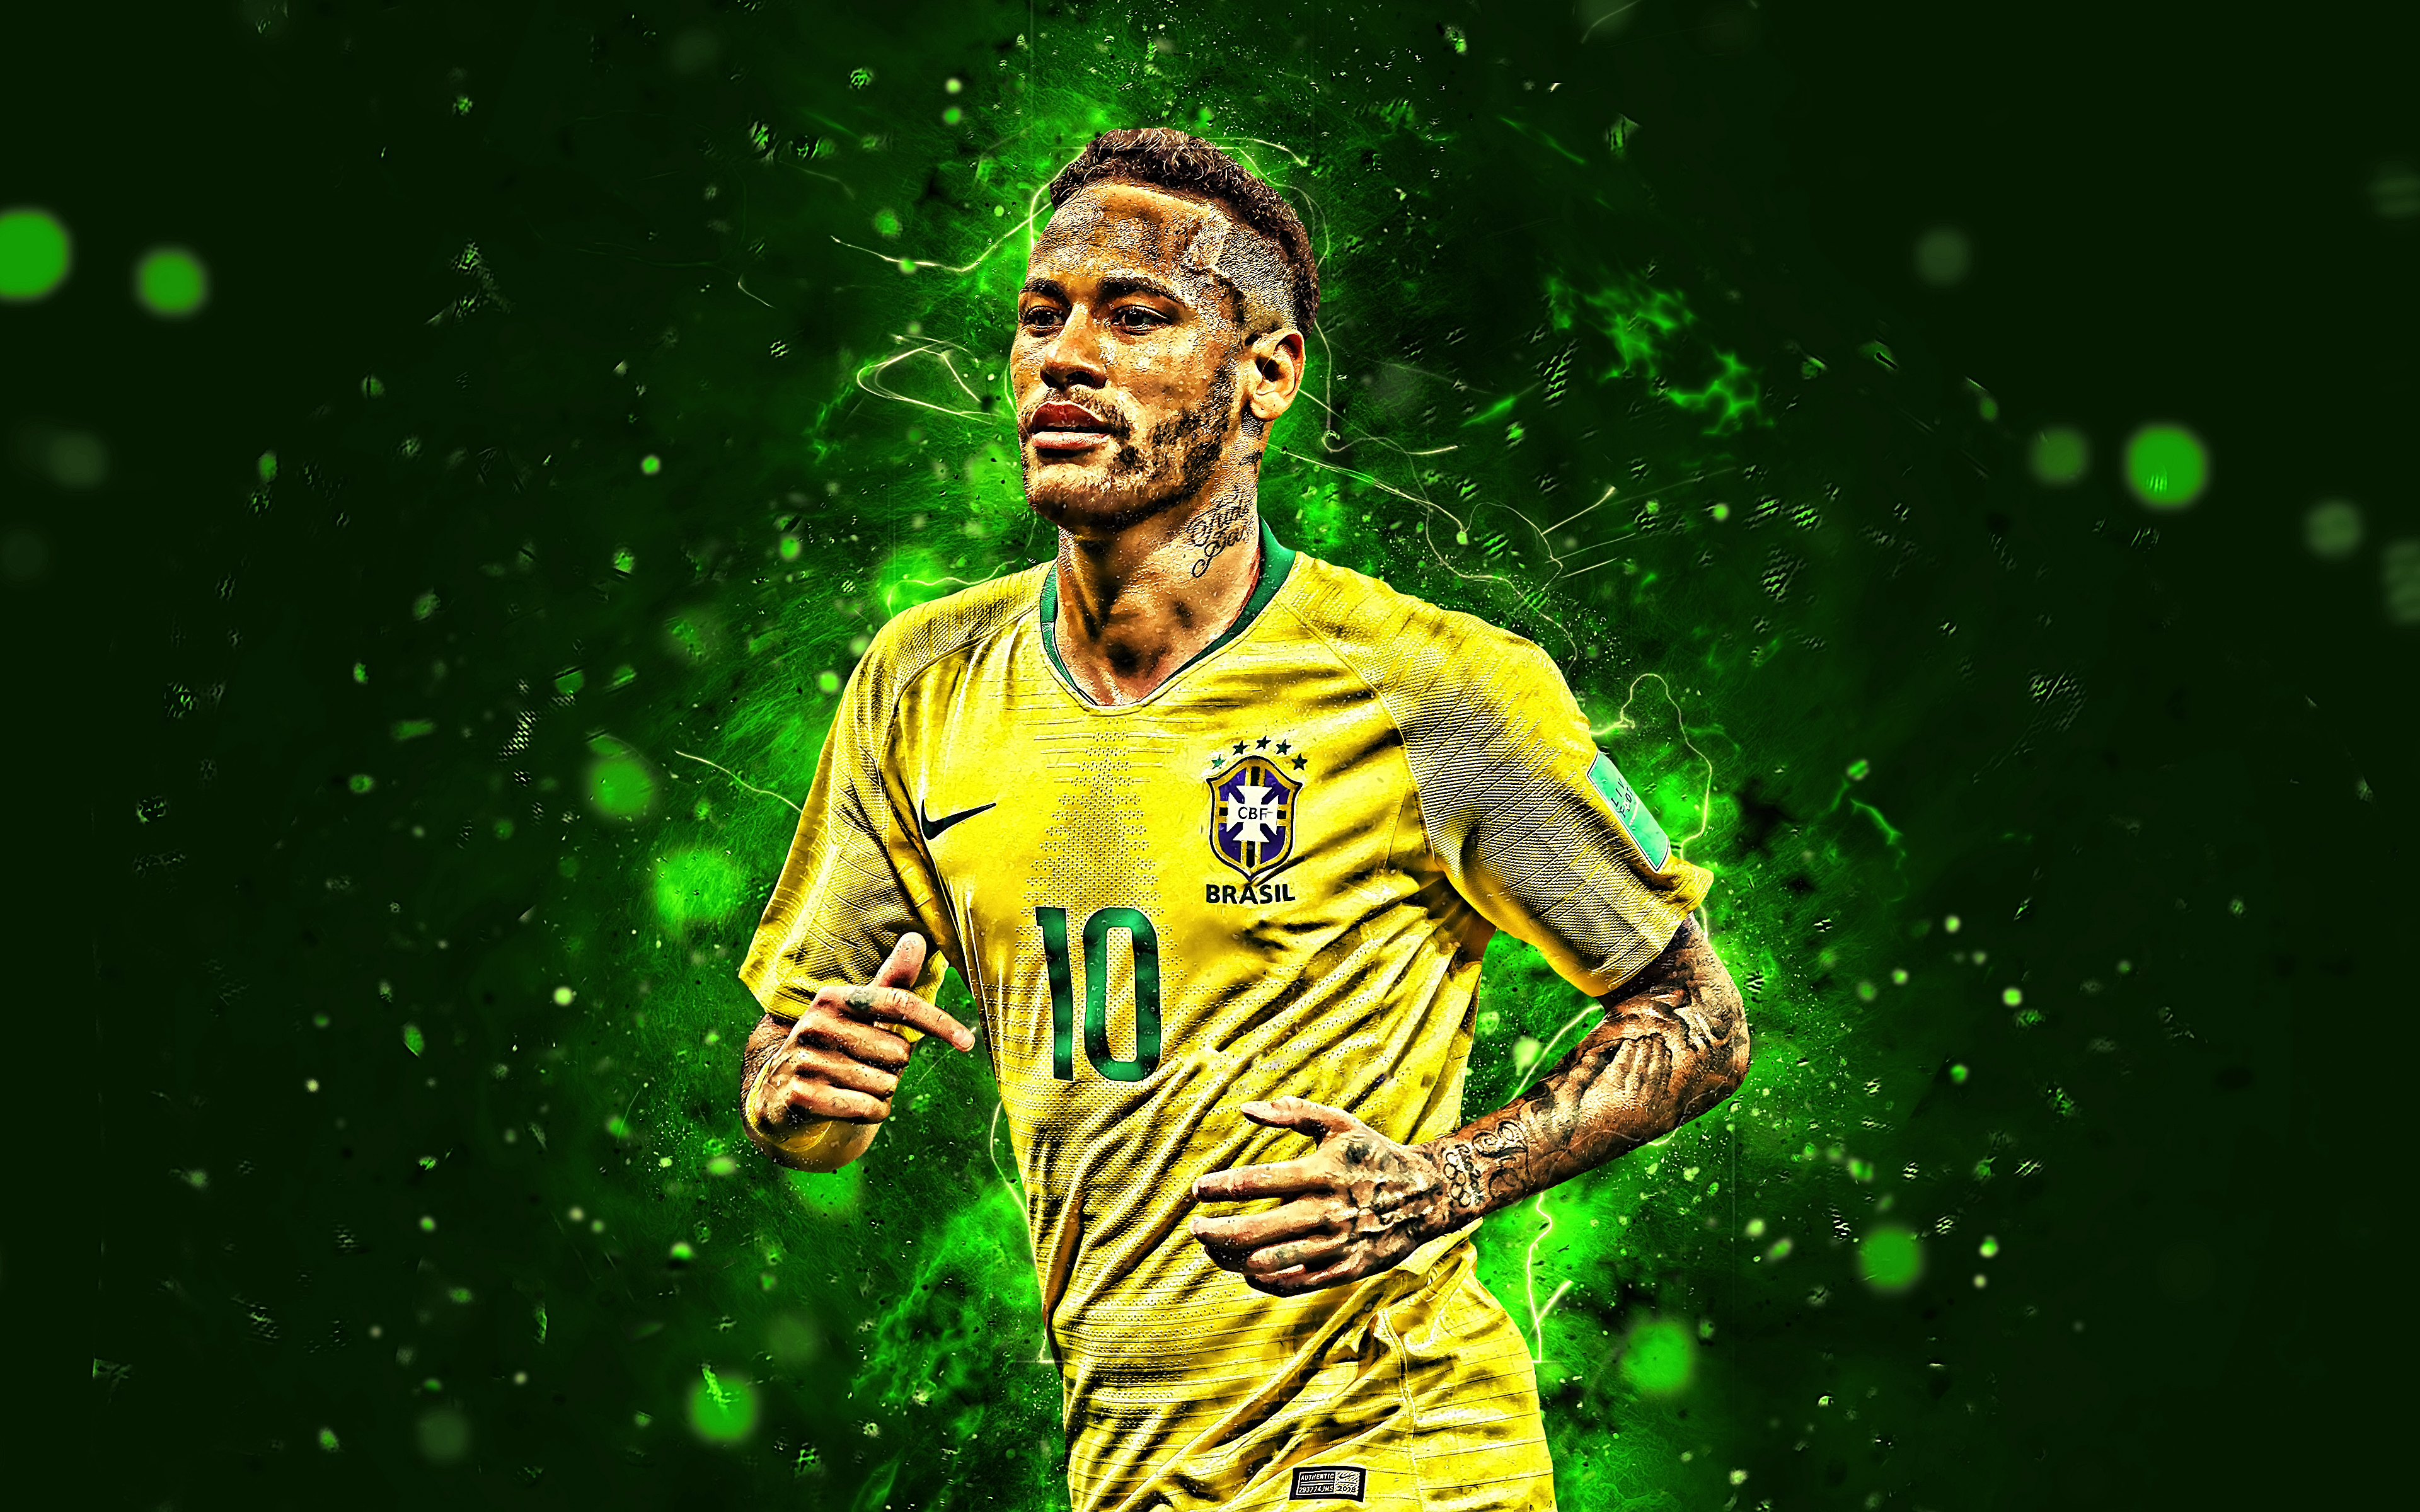 Thưởng thức những hình nền Neymar đầy sống động và chất lượng cao với độ phân giải 4K Ultra HD tại các trang web chia sẻ hình ảnh. Đưa Neymar về chiếc điện thoại hay máy tính của bạn để tận hưởng trải nghiệm tuyệt vời nhé.